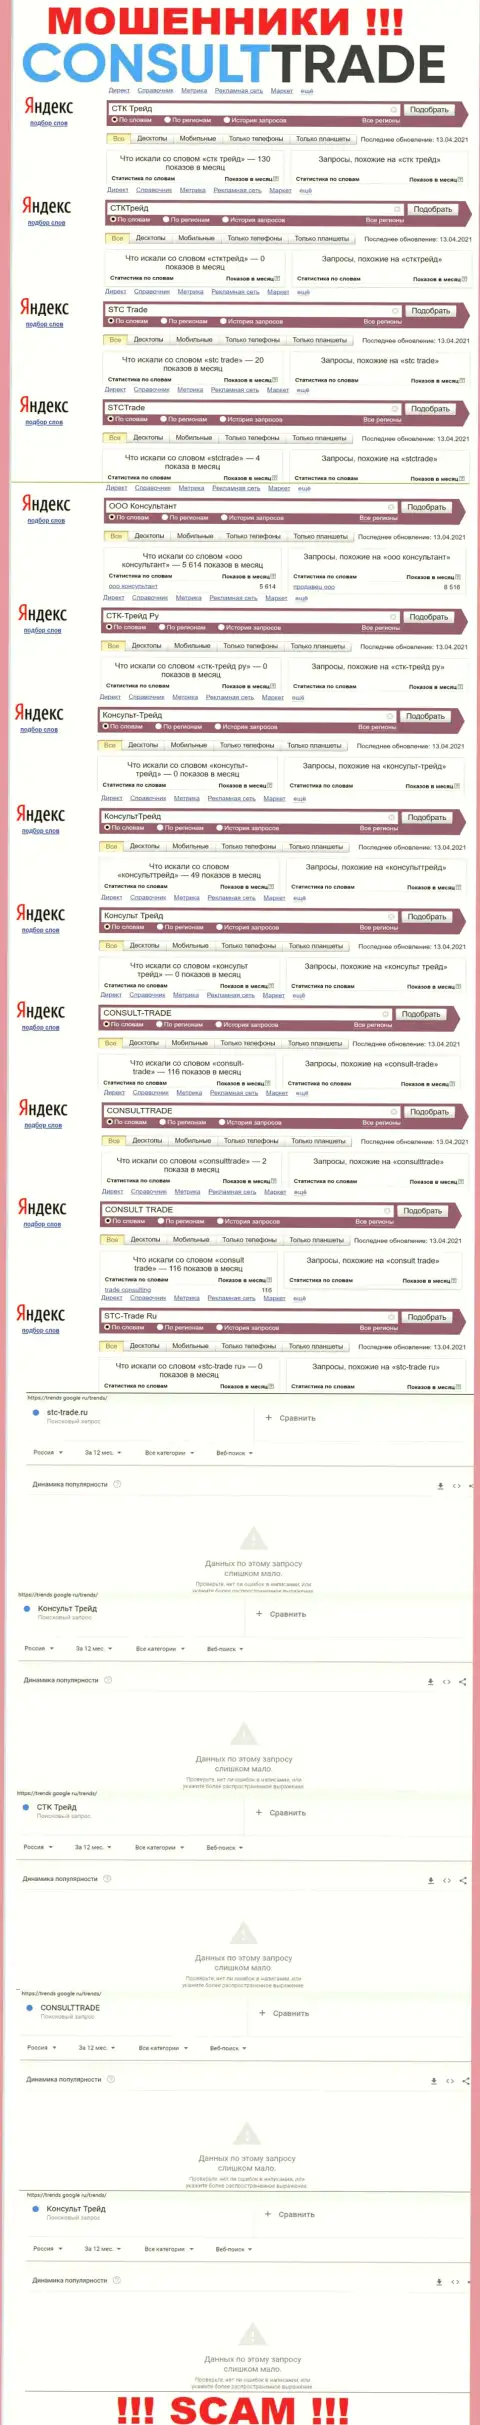 Скриншот статистических сведений поисковых запросов по незаконно действующей организации STC-Trade Ru